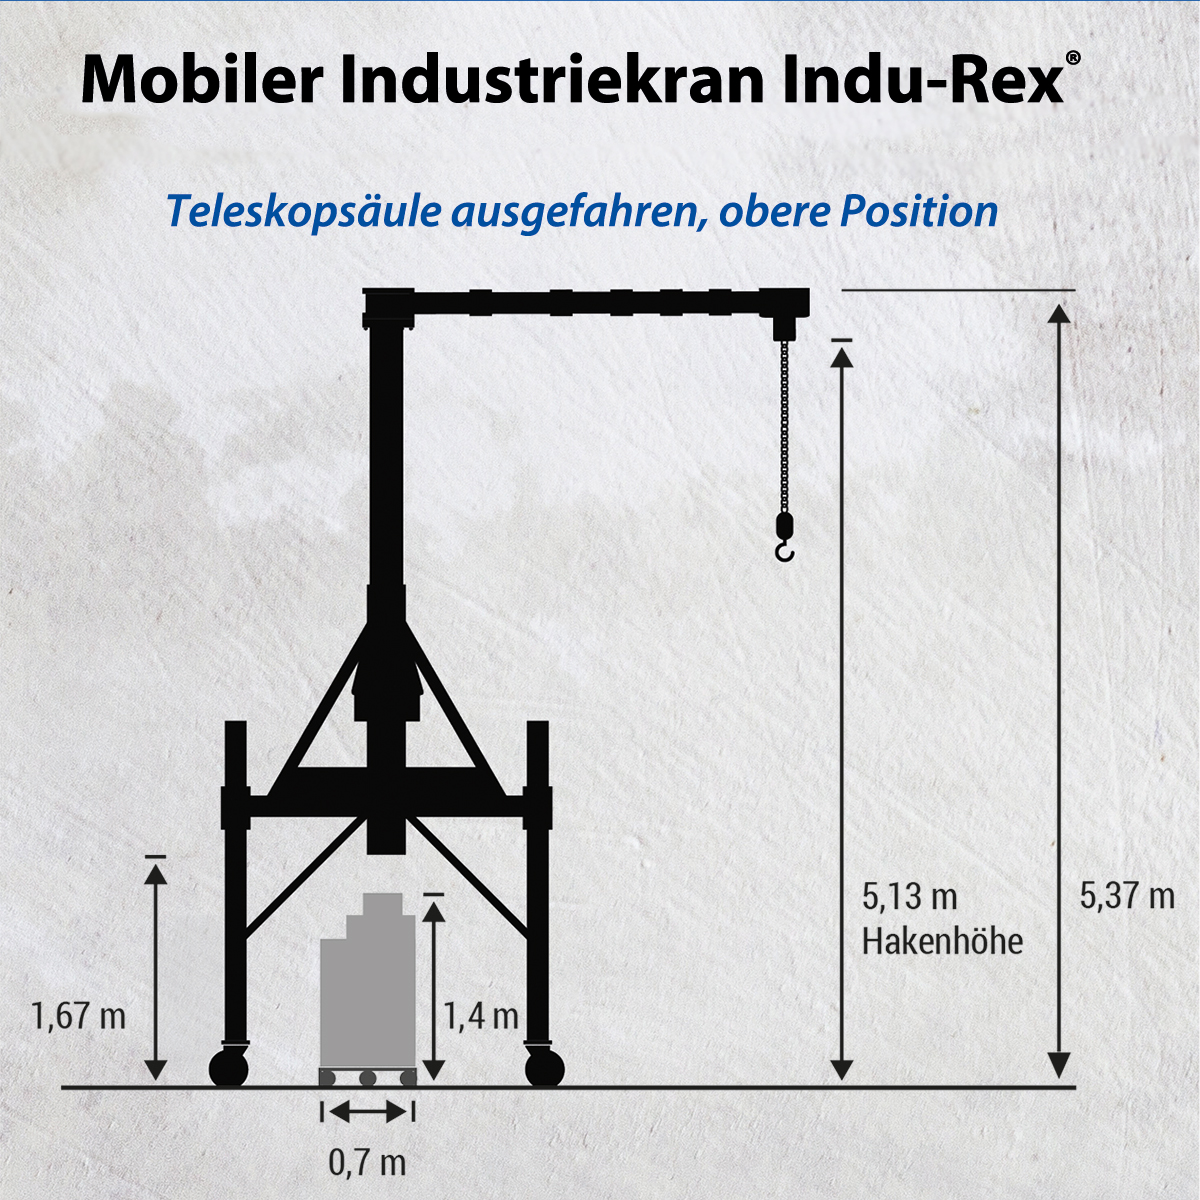 Mobiler Industriekran Indu-Rex® mit Mehrfachgelenkausleger und Elektrokettenzug